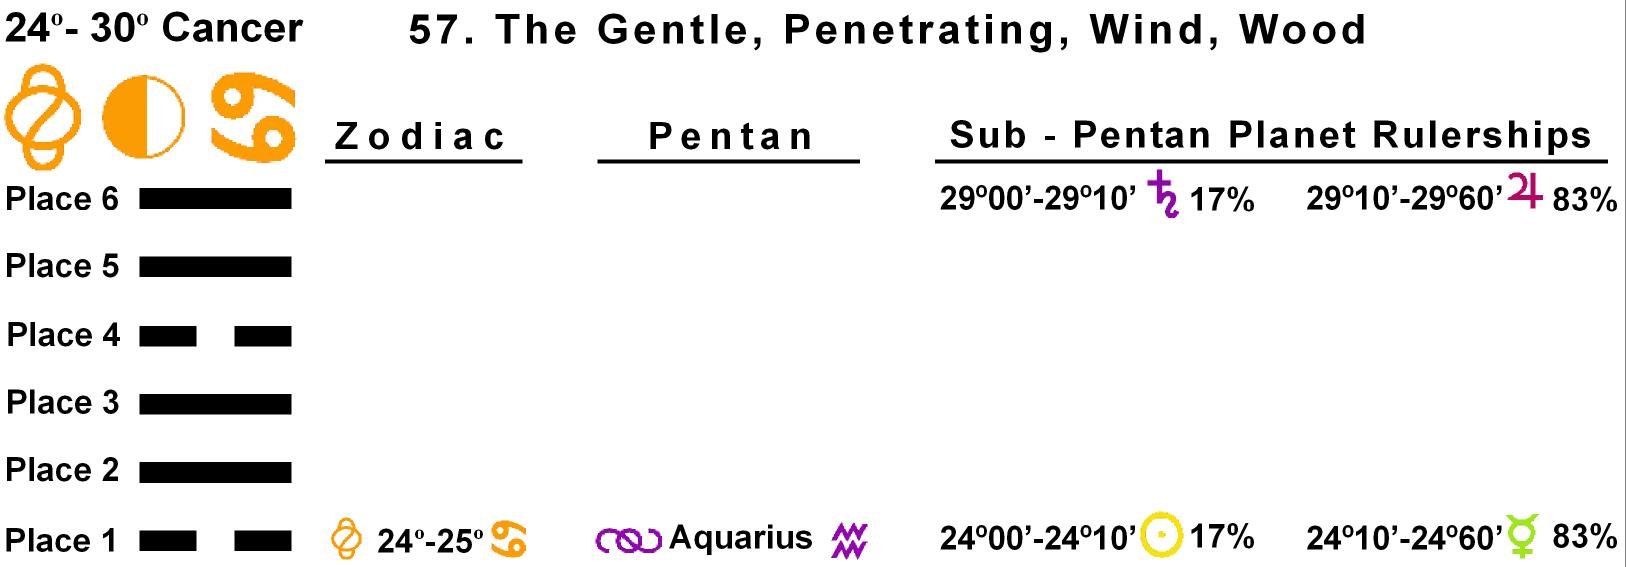 Pent-lines-04CA 24-25 Hx-57 The Gentle